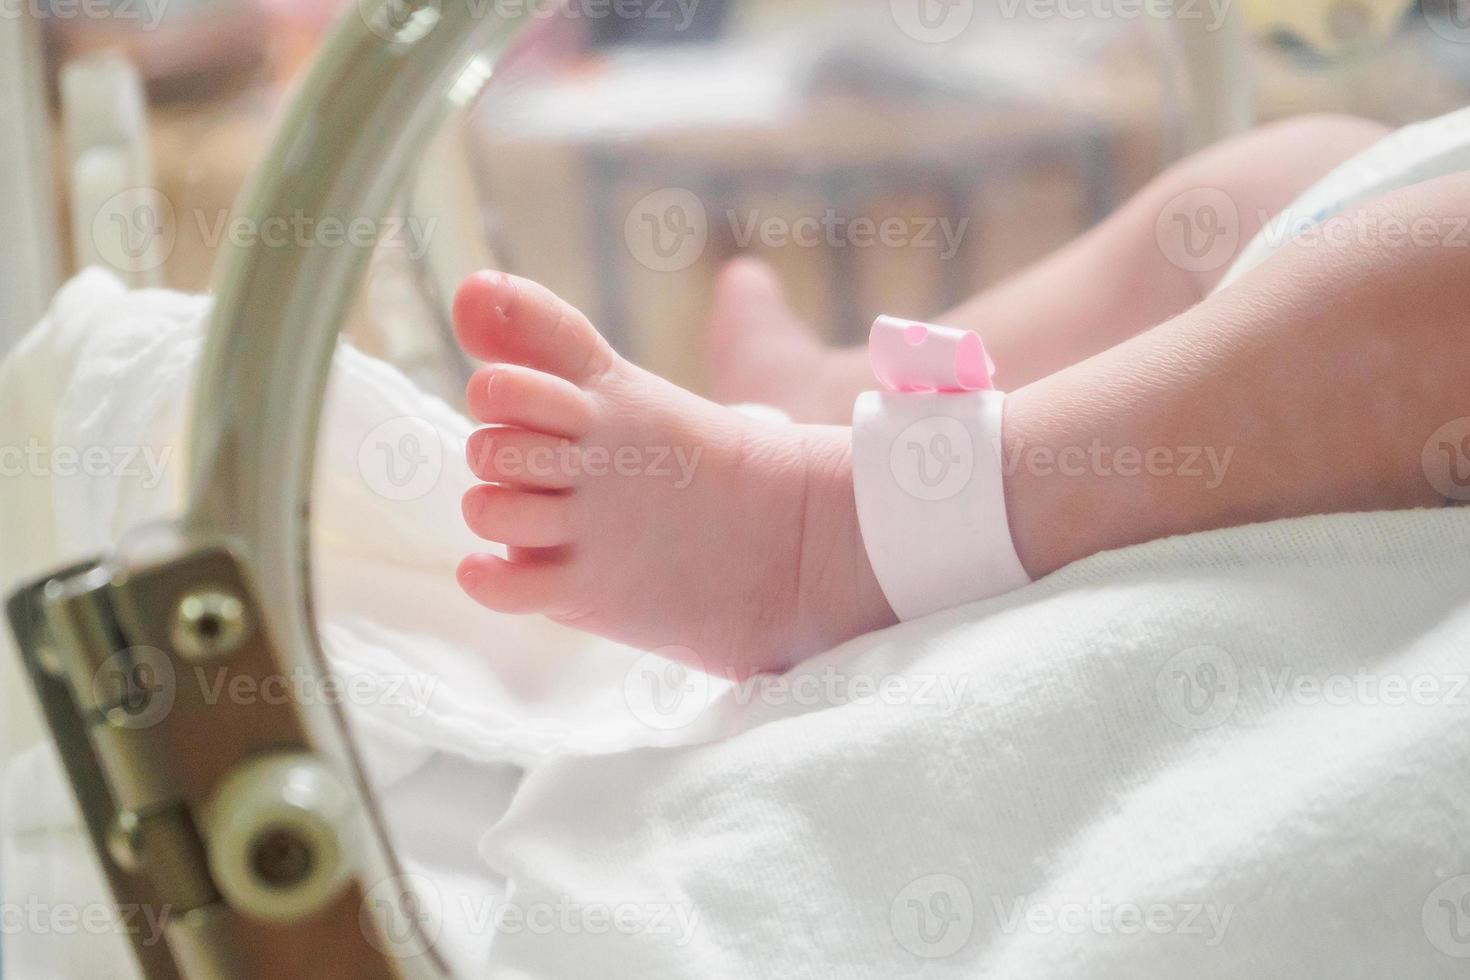 neonato ragazza bambino dentro incubatrice nel ospedale con identificazione braccialetto etichetta nome foto